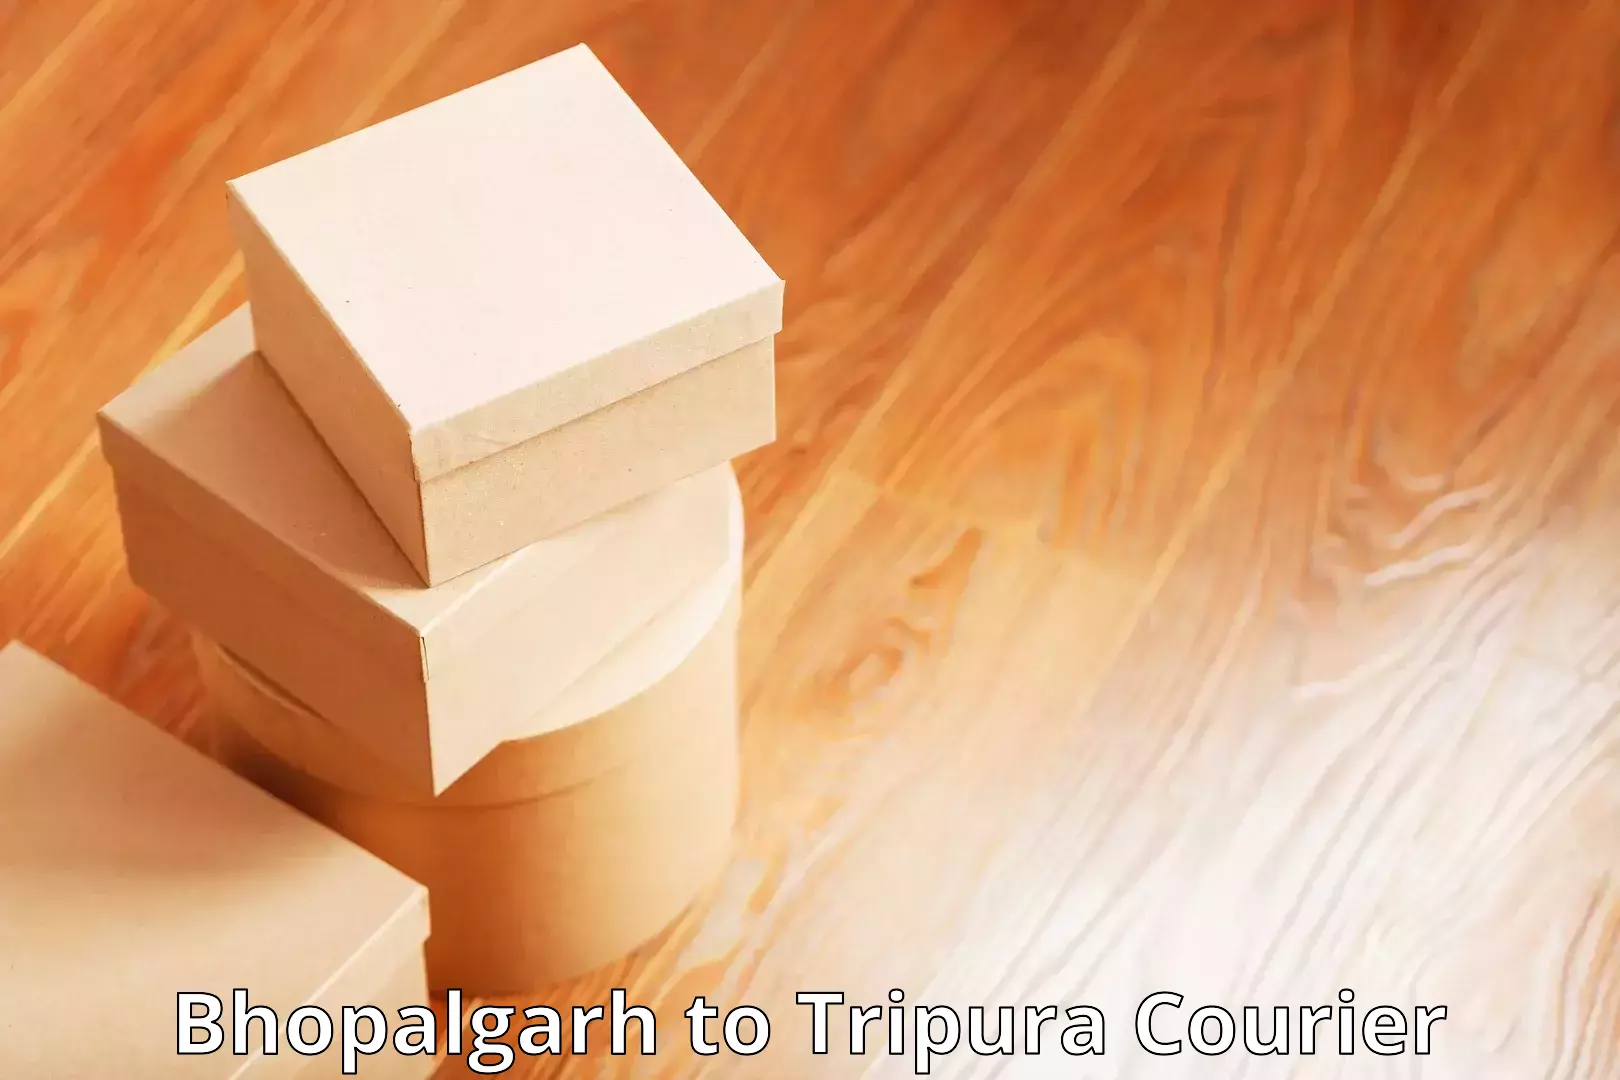 Bulk shipping discounts Bhopalgarh to Tripura